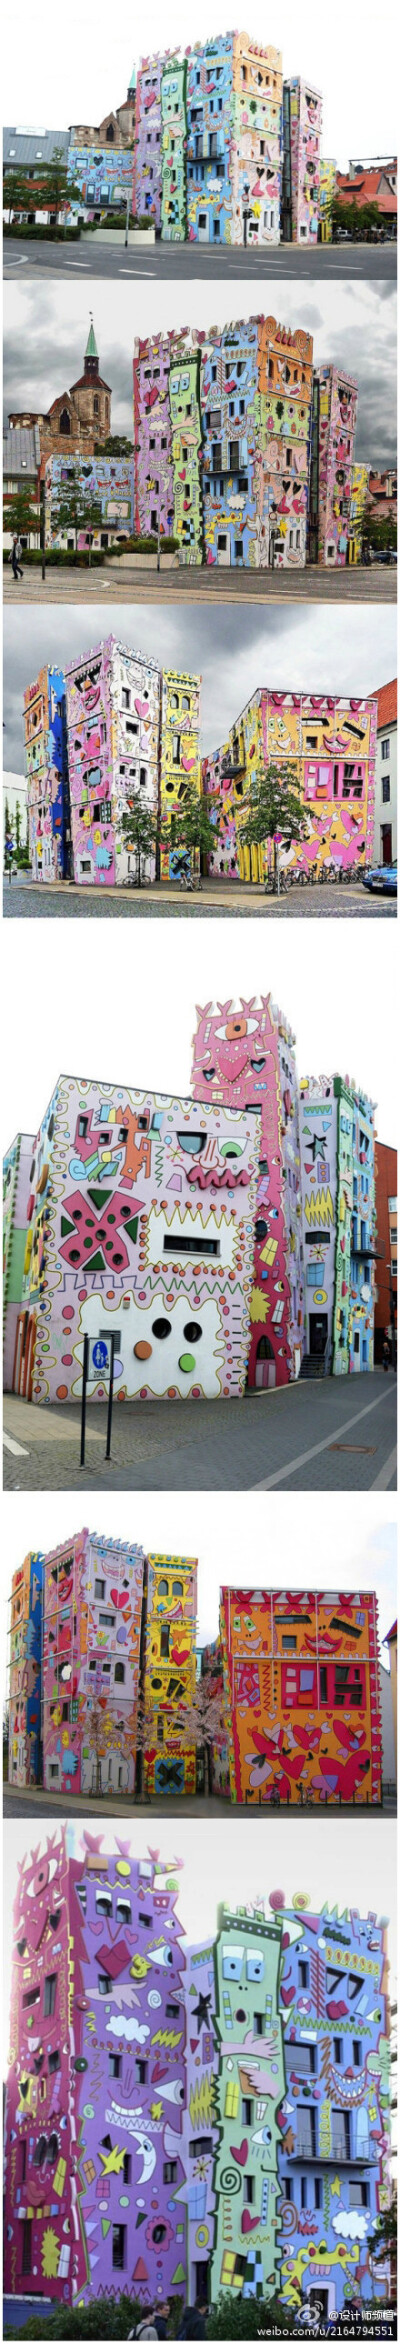 世界上最欢乐的大楼——德国布伦瑞克的Rizzi楼（Rizzi House），这座建筑由美国流行艺术家James Rizzi设计，James Rizzi擅长孩童般的插画作品及奇趣风格雕塑。（内容收集自网络）